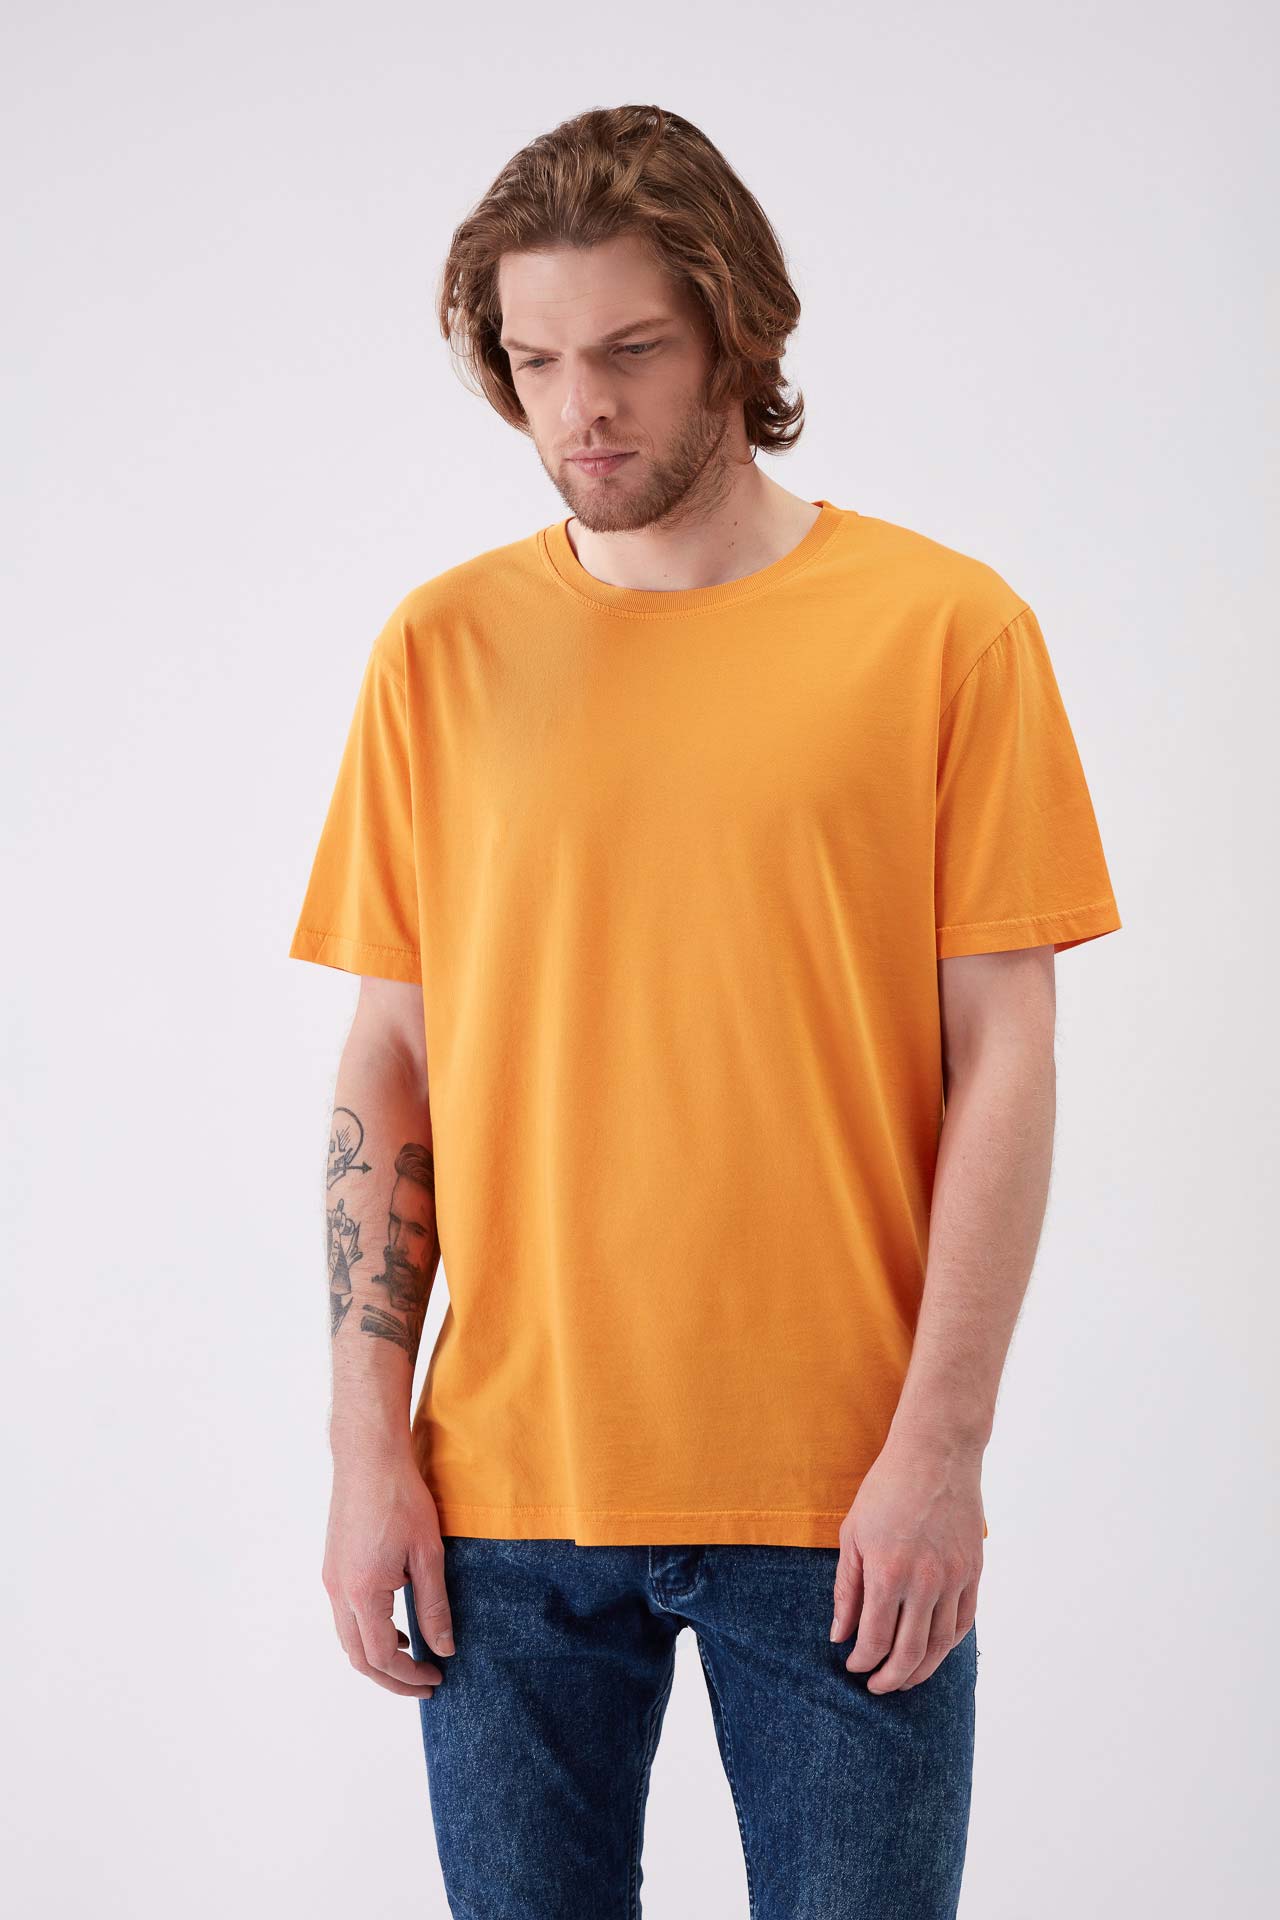 160/310 - T-shirt Homem